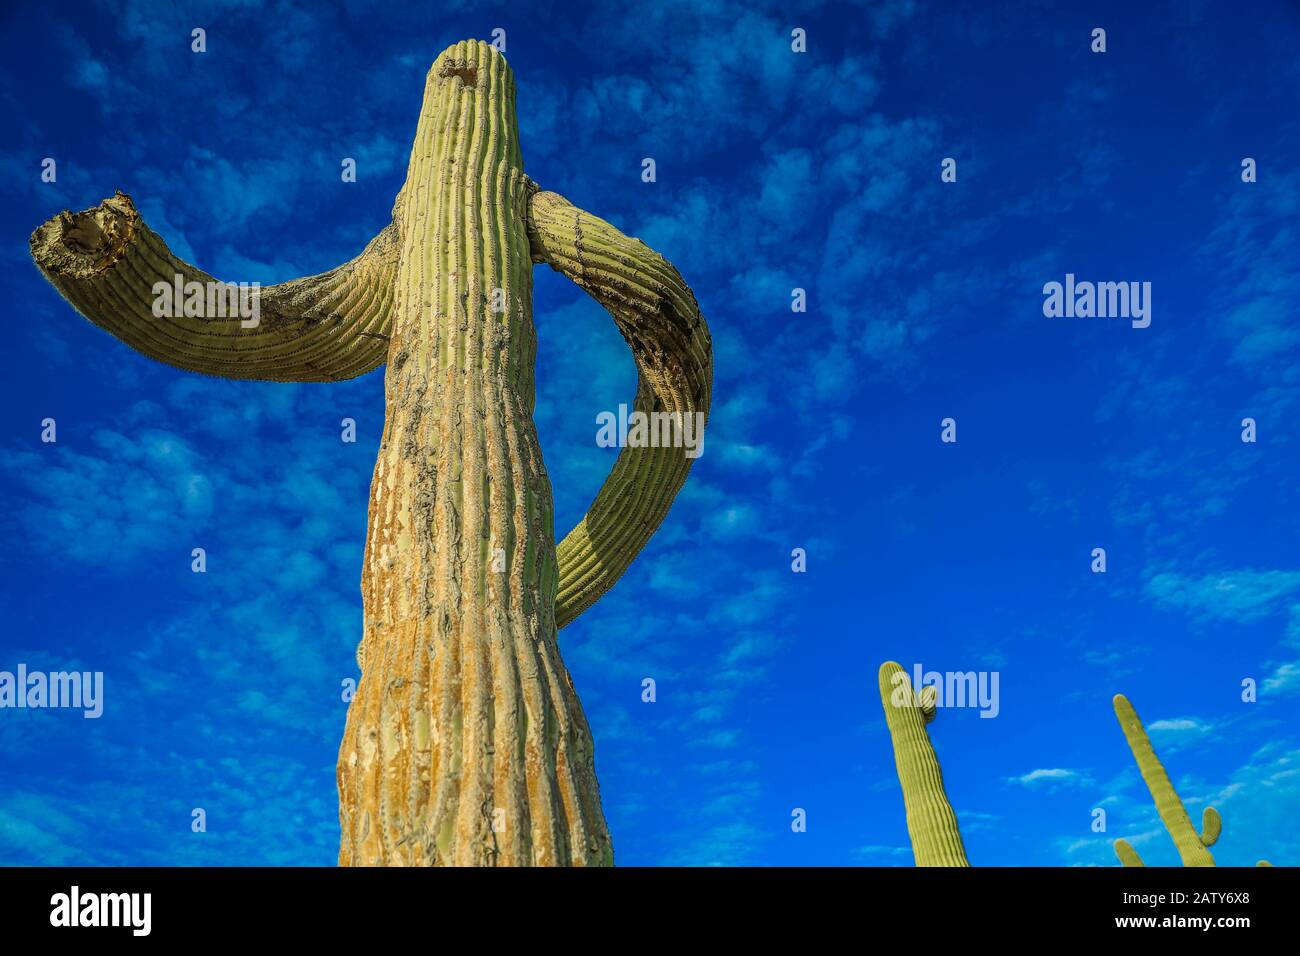 Saguaro o Sahuaro (Carnegiea gigantea) a forma di uomo. Tipico cactus colonnare del deserto di sonora, Messico. monotípicoc è una specie di maggiori dimensioni tra i cactus .... PAROLE chiave: Surreale, alieno, extraterrestre, strano, forma, malformazione, ritorto, brazes di albero, spine ossee, rare, intrecciate, storte, storte. Saguaro o sahuaro (Carnegiea gigantea) con forma de un hombre. Cactus columnar típico del Desierto de sonora, Messico. monotípicoc es una especies de Mayor entre porte cactáceas....ENTRAS DE PORTE... surreale, alienigena, extraterreste, extraño, forma, malformacion, retorcido, Foto Stock